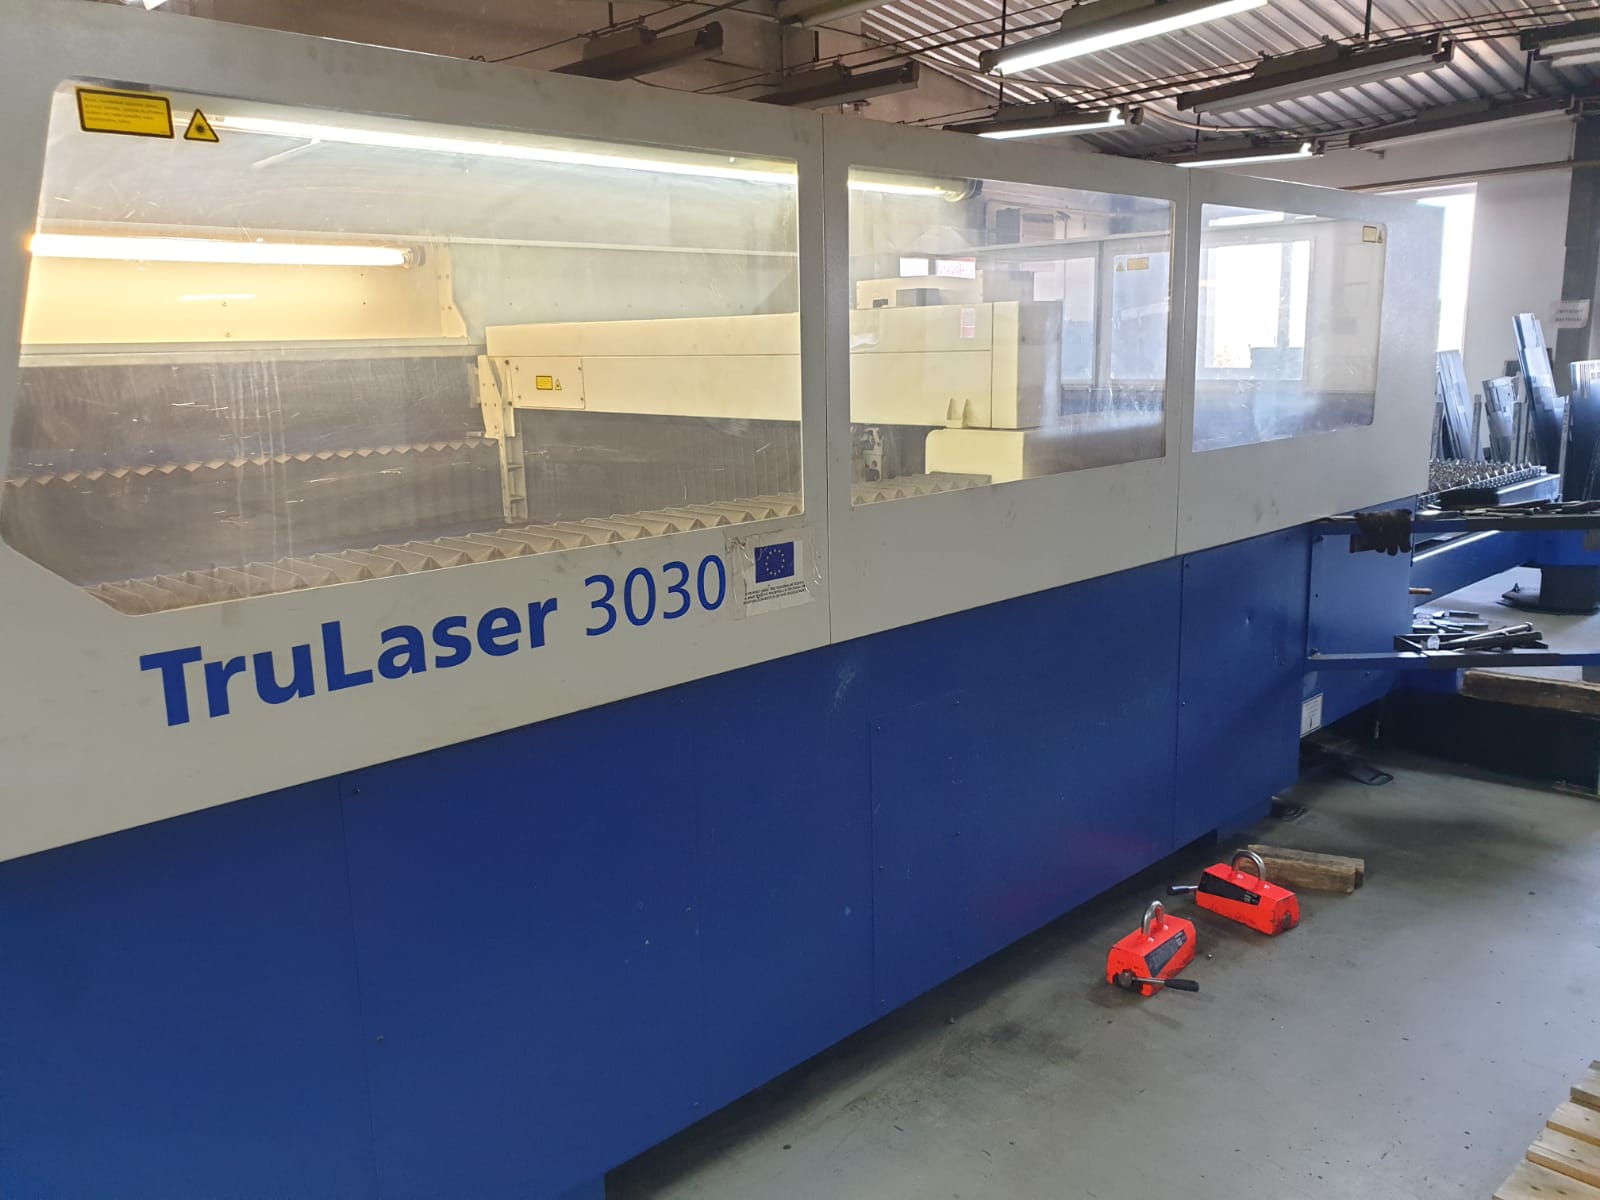 TruLaser 3030 laser